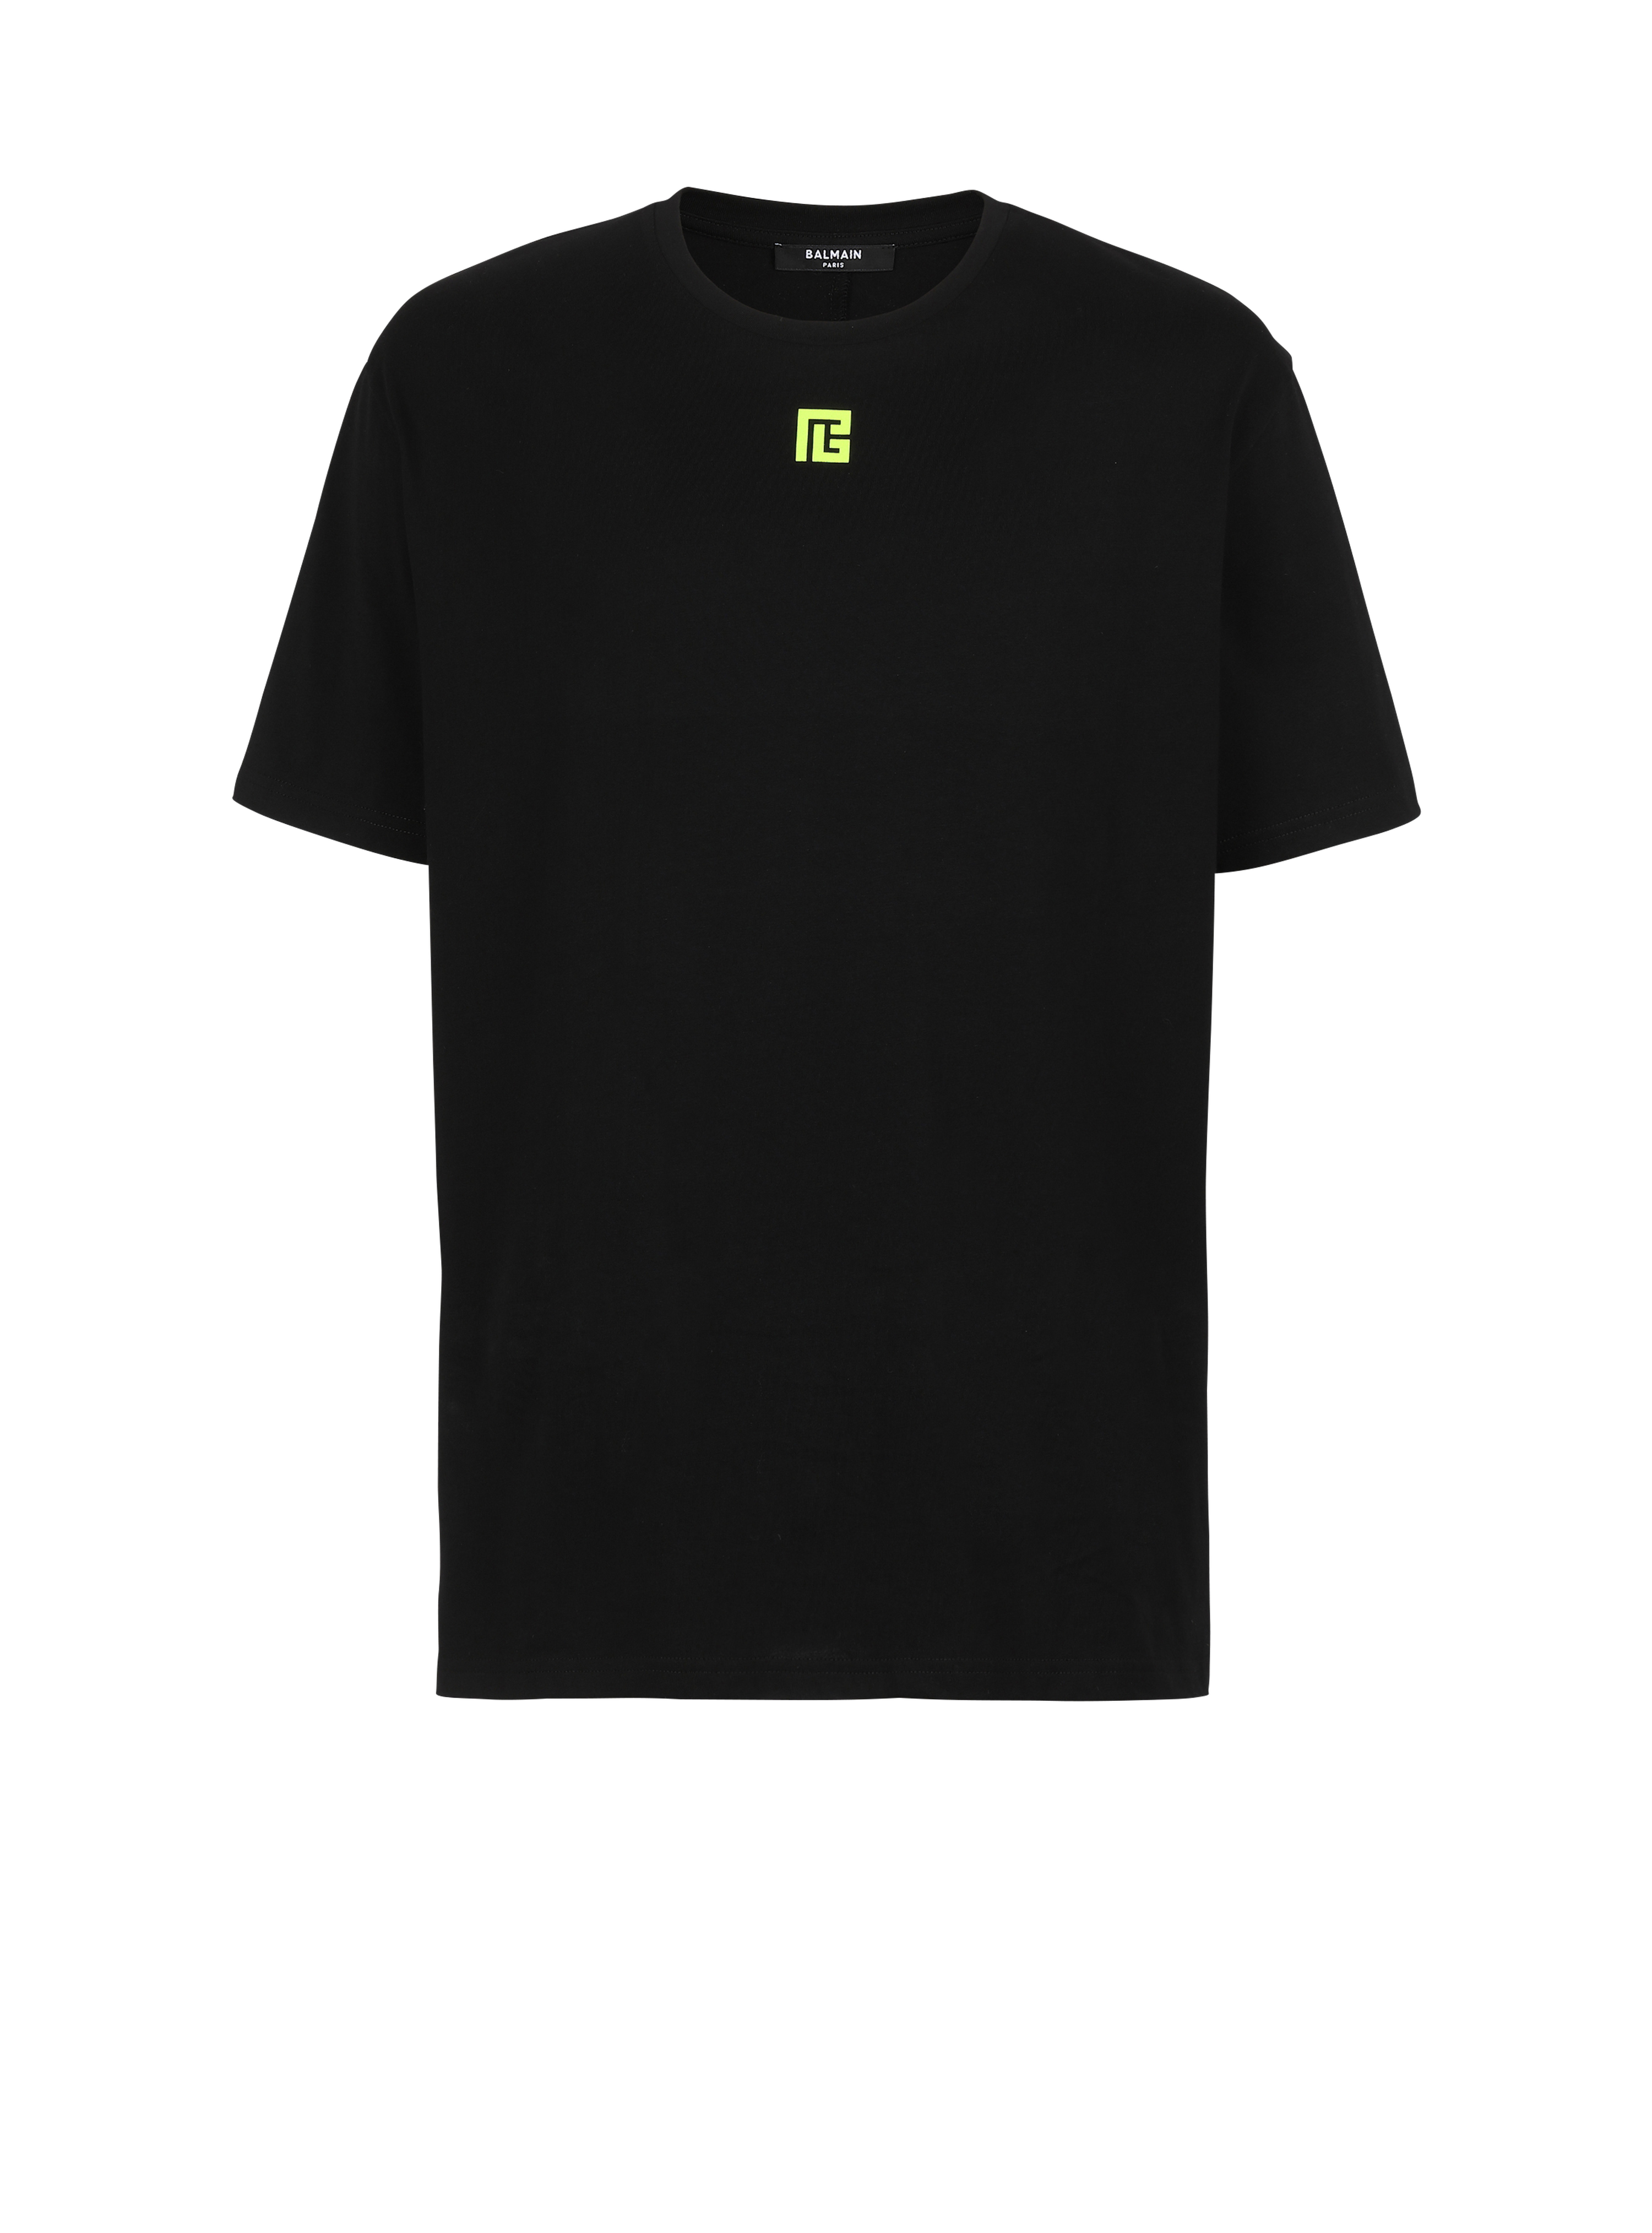 T-shirt in cotone con maxi logo Balmain sul retro, nero